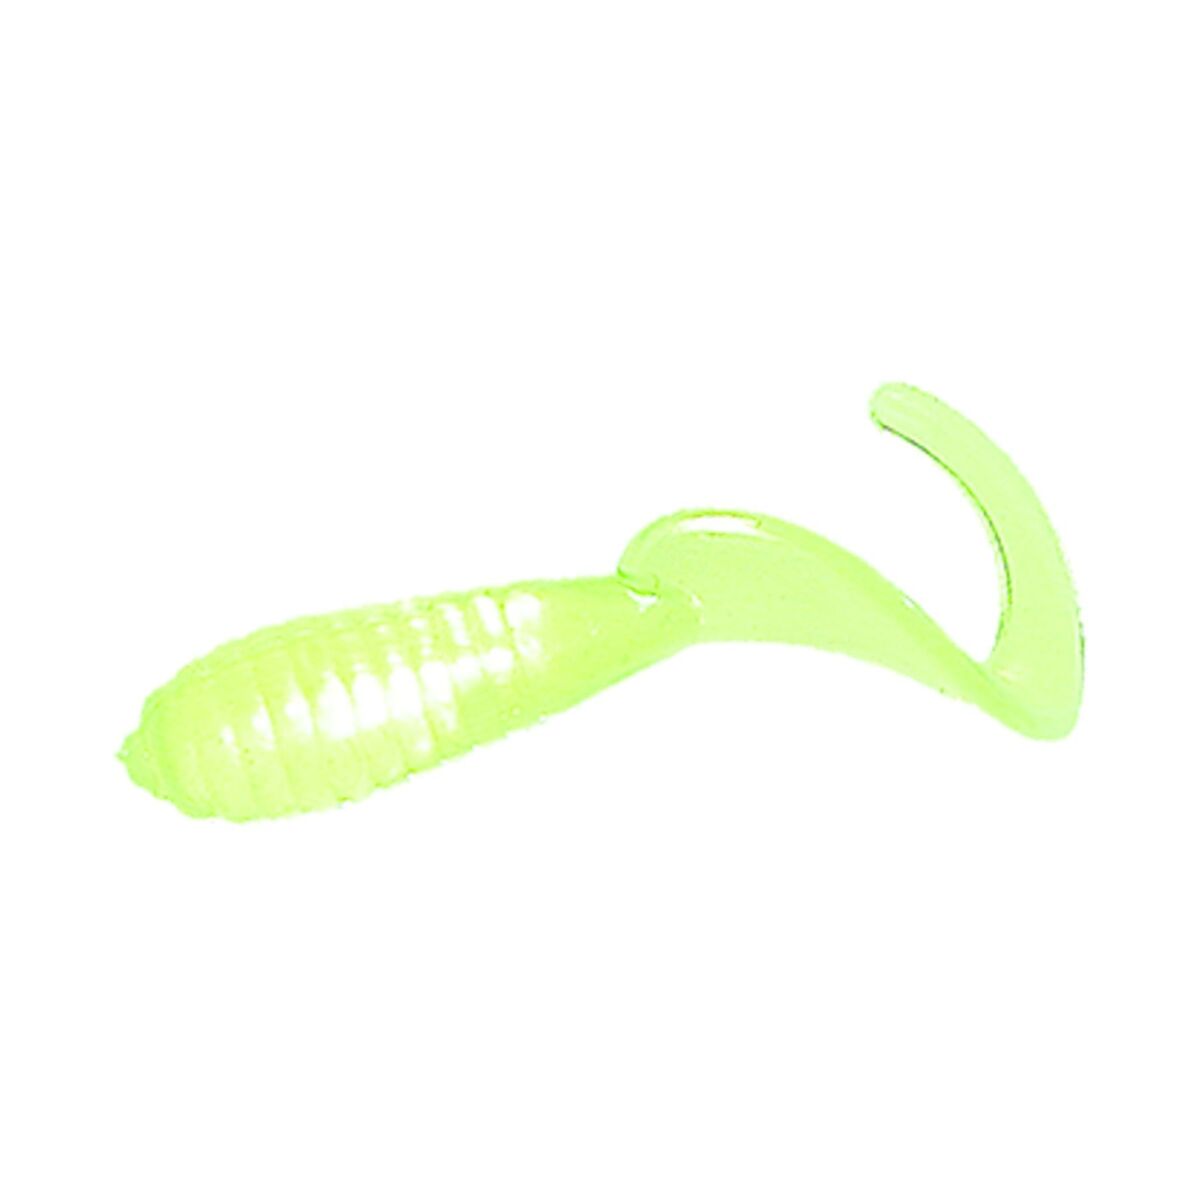 Mister Twister Lil' Bit - 1 - Chartreuse